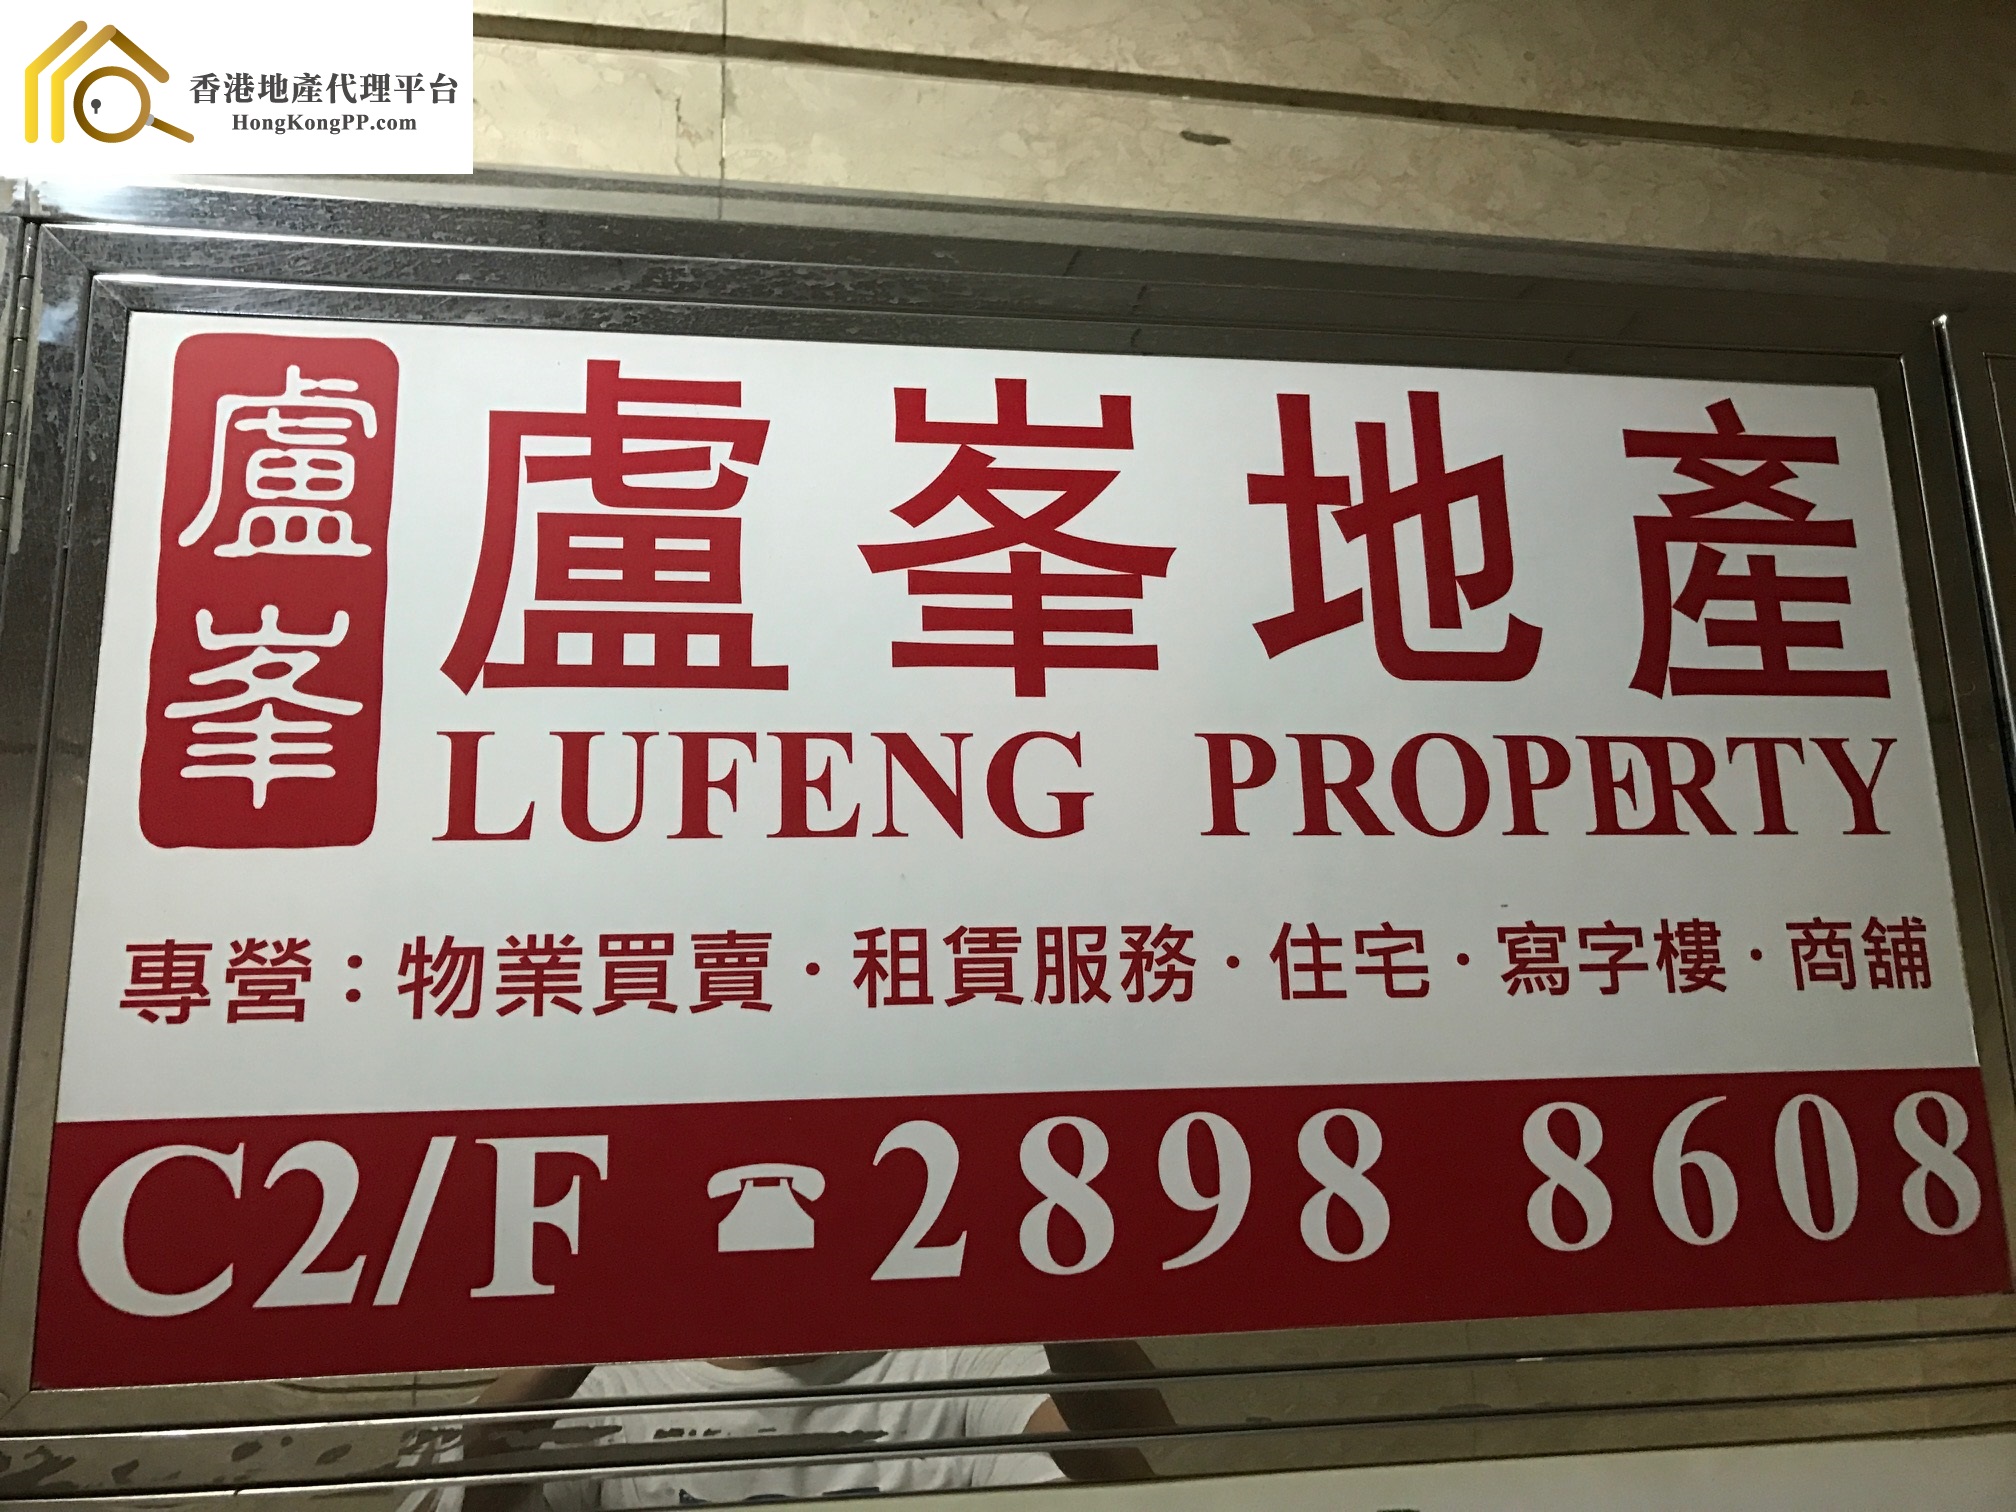 車位地產代理: 盧峯地產 Lufeng Property